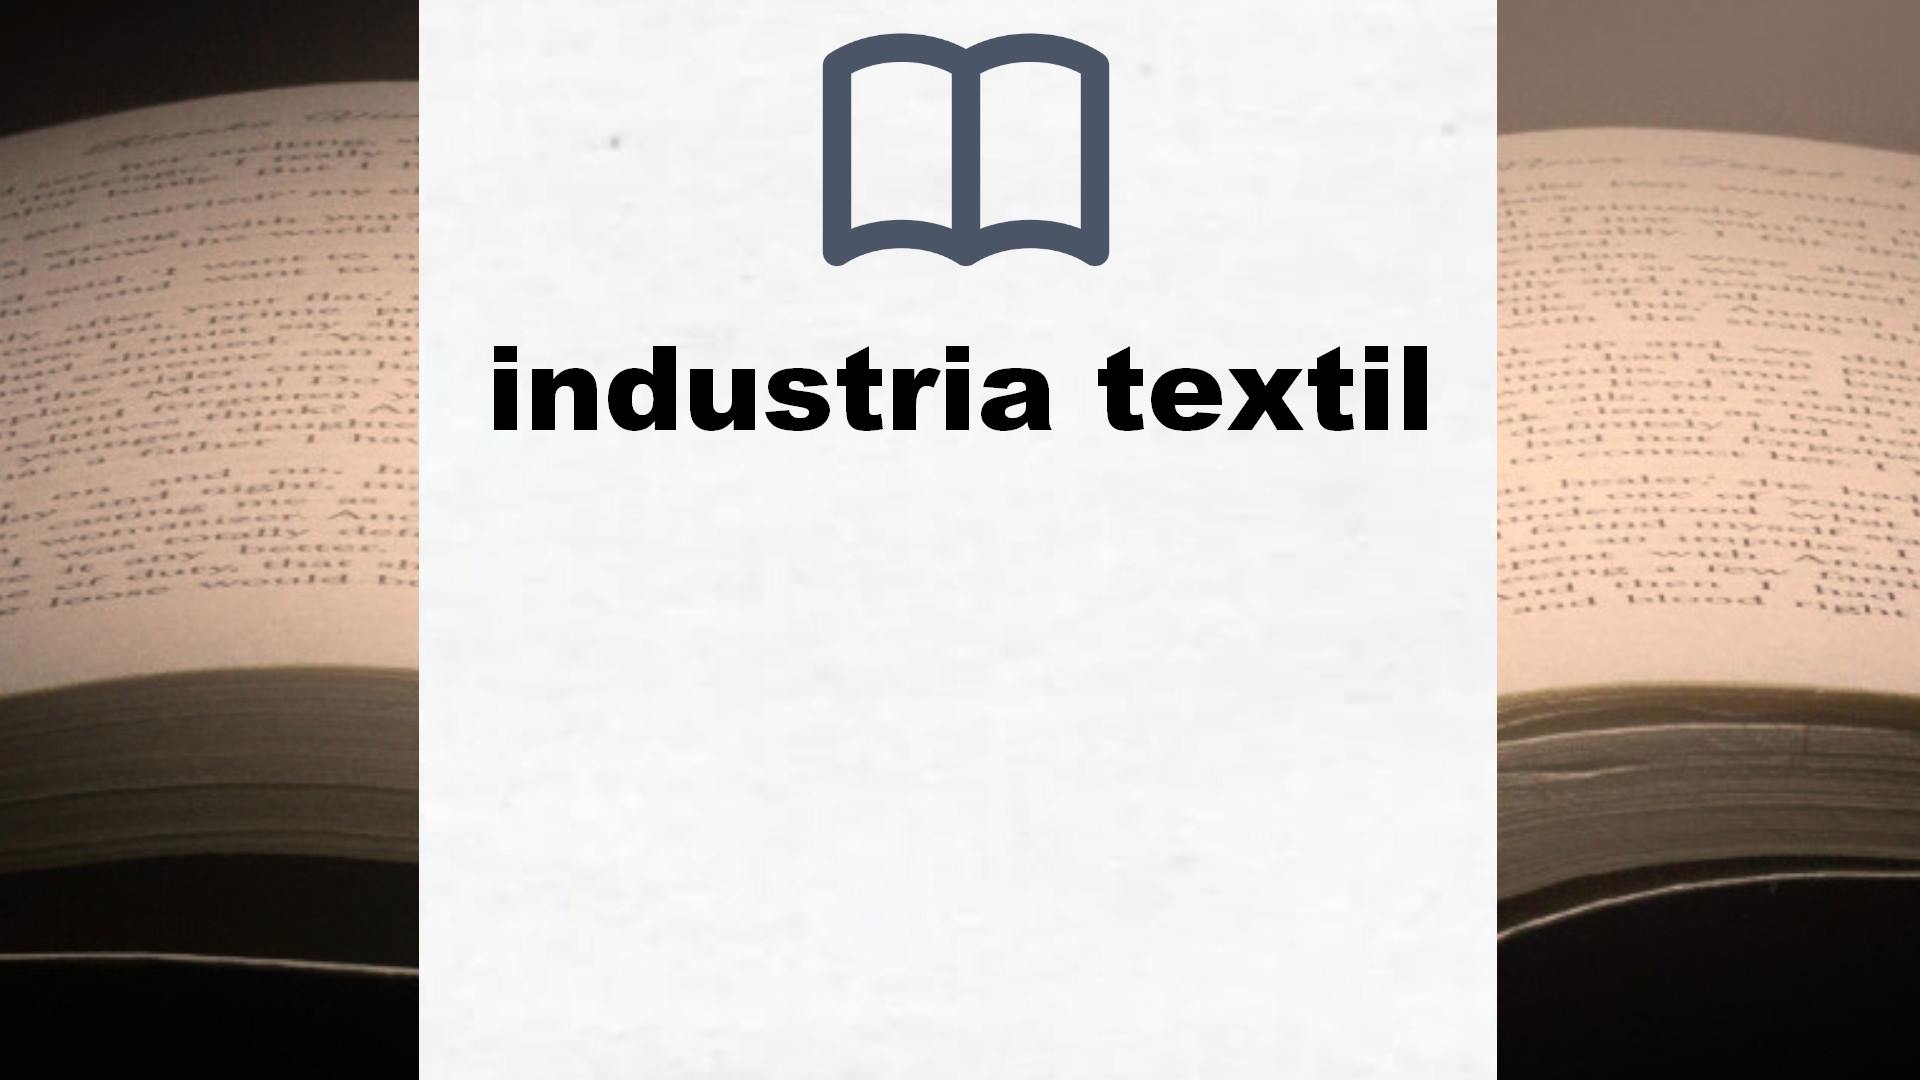 Libros sobre industria textil